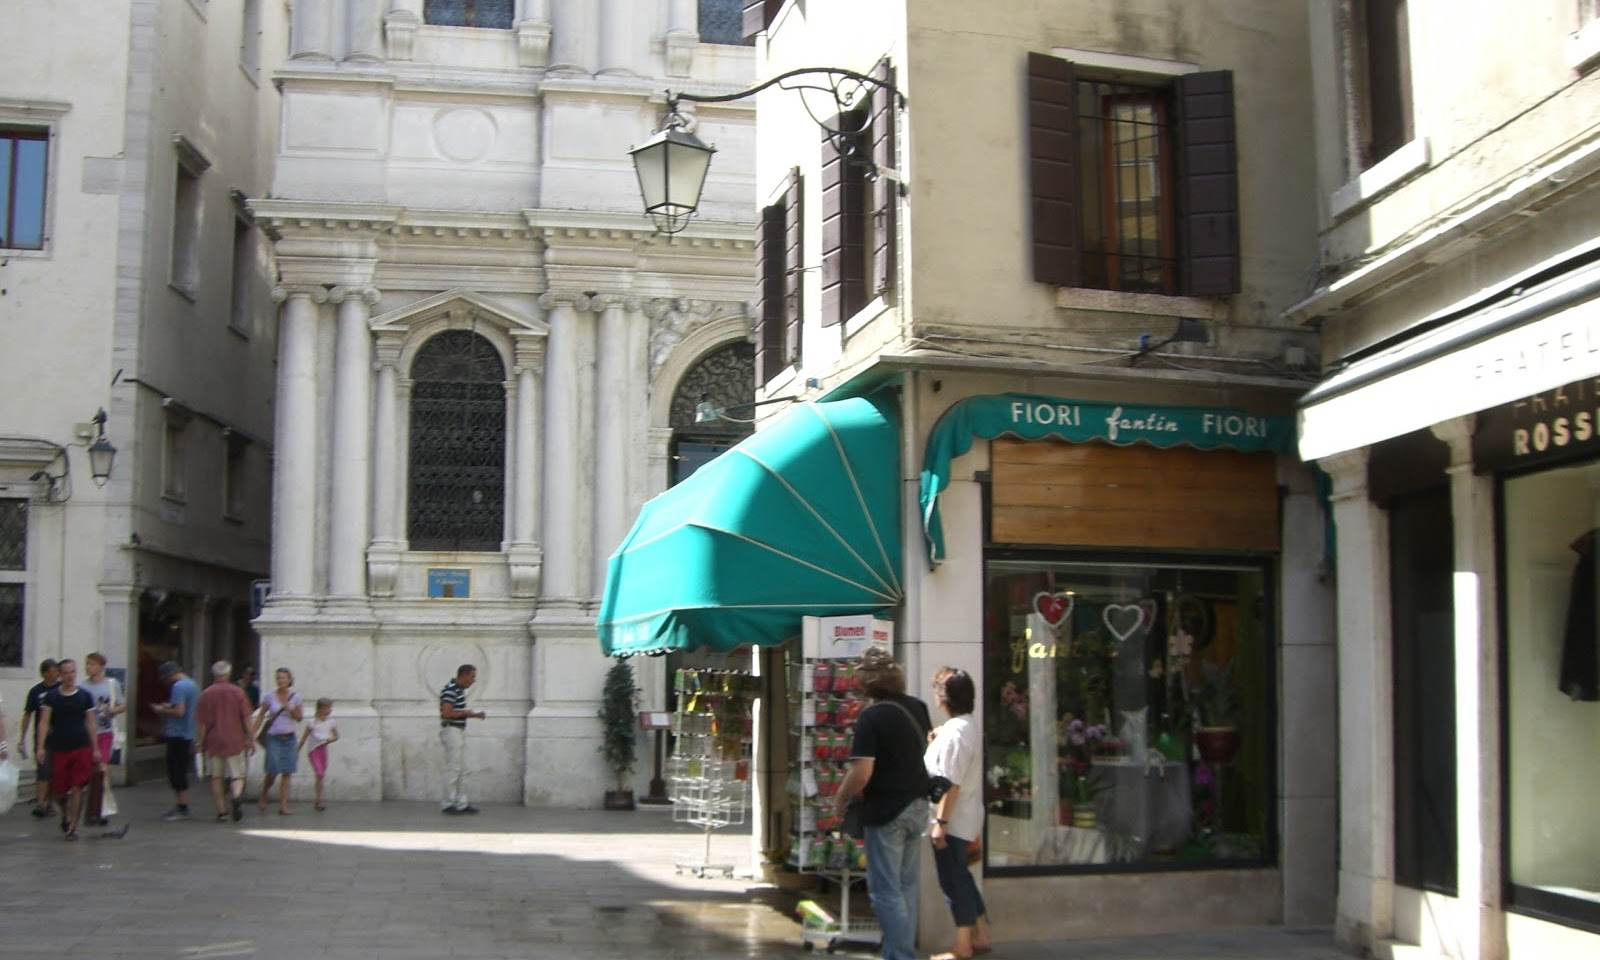 Il fioraio di Venezia - all you need for a garden in Venice